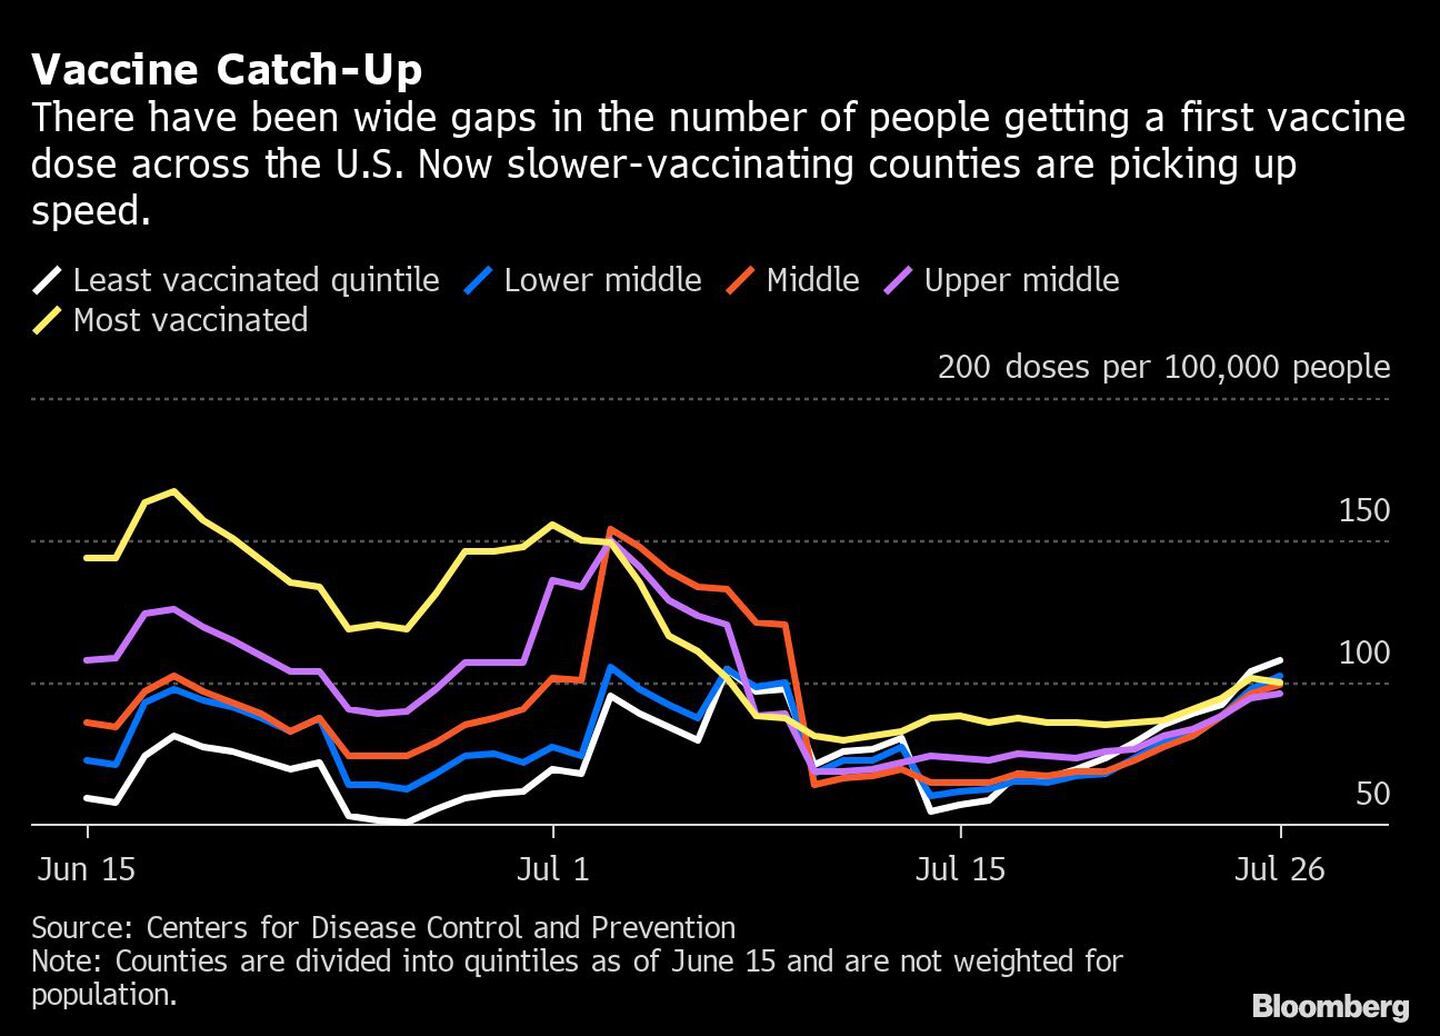 Ha habido grandes diferencias en el número de personas que han recibido la primera dosis de la vacuna en los EE.UU. Ahora los países que se vacunan más lentamente están acelerando el ritmo. 

De izquierda a derecha
Quinteto menos vacunado, medio bajo, medio, medio alto, más vacunado.dfd